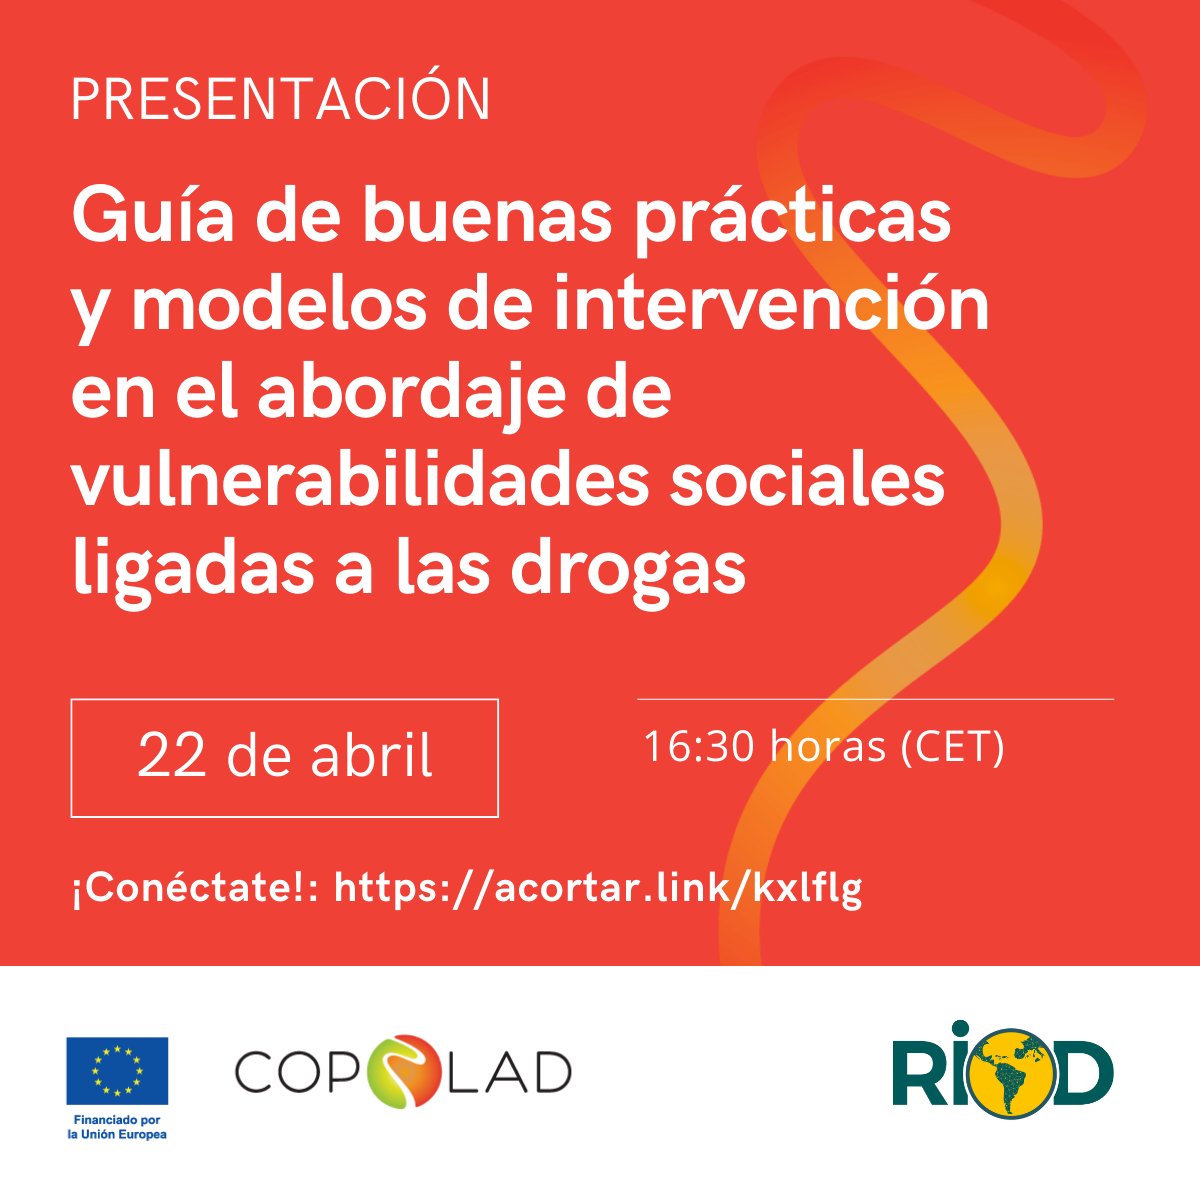 En 🔟 días presentamos la nueva 'Guía de buenas prácticas y modelos de intervención en América Latina-Caribe y la UE en materia de abordaje de vulnerabilidades sociales ligadas a las drogas'. 🔗 Regístrate y asiste ON-LINE: i.mtr.cool/bslxngakgt 🤝 Con @RIOD_oficial